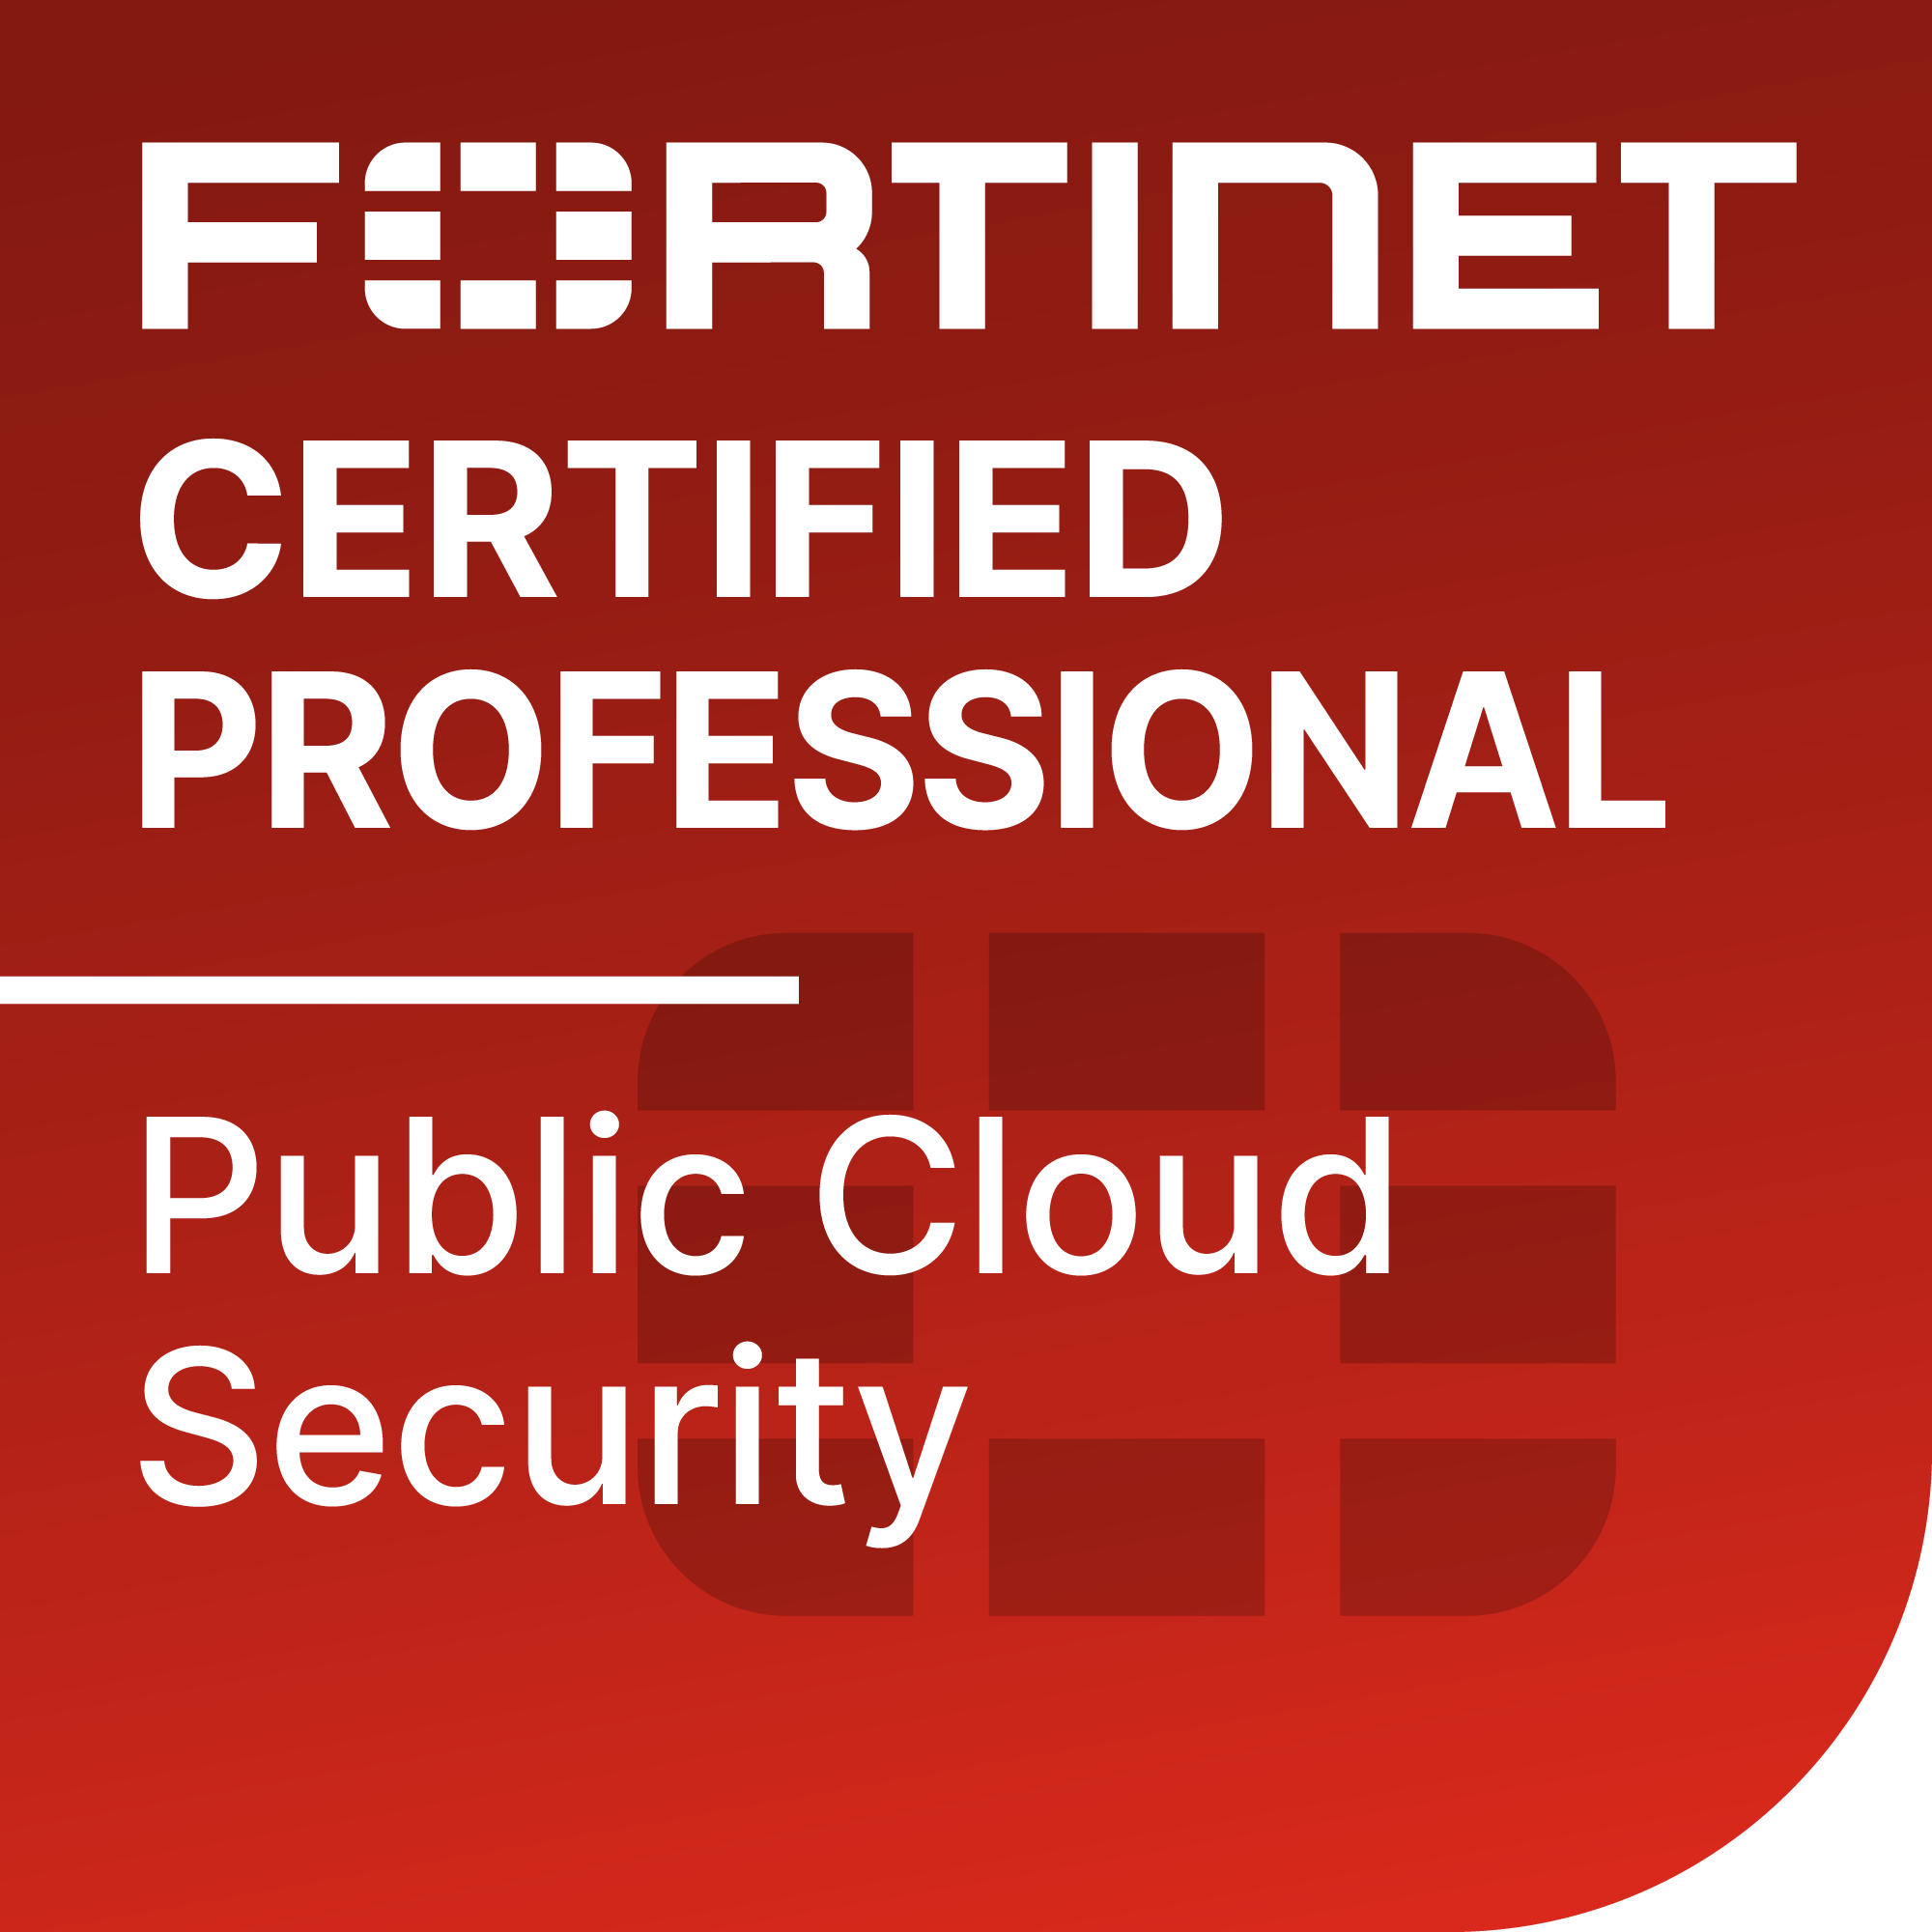 ftnt nse cert professional public cloud security